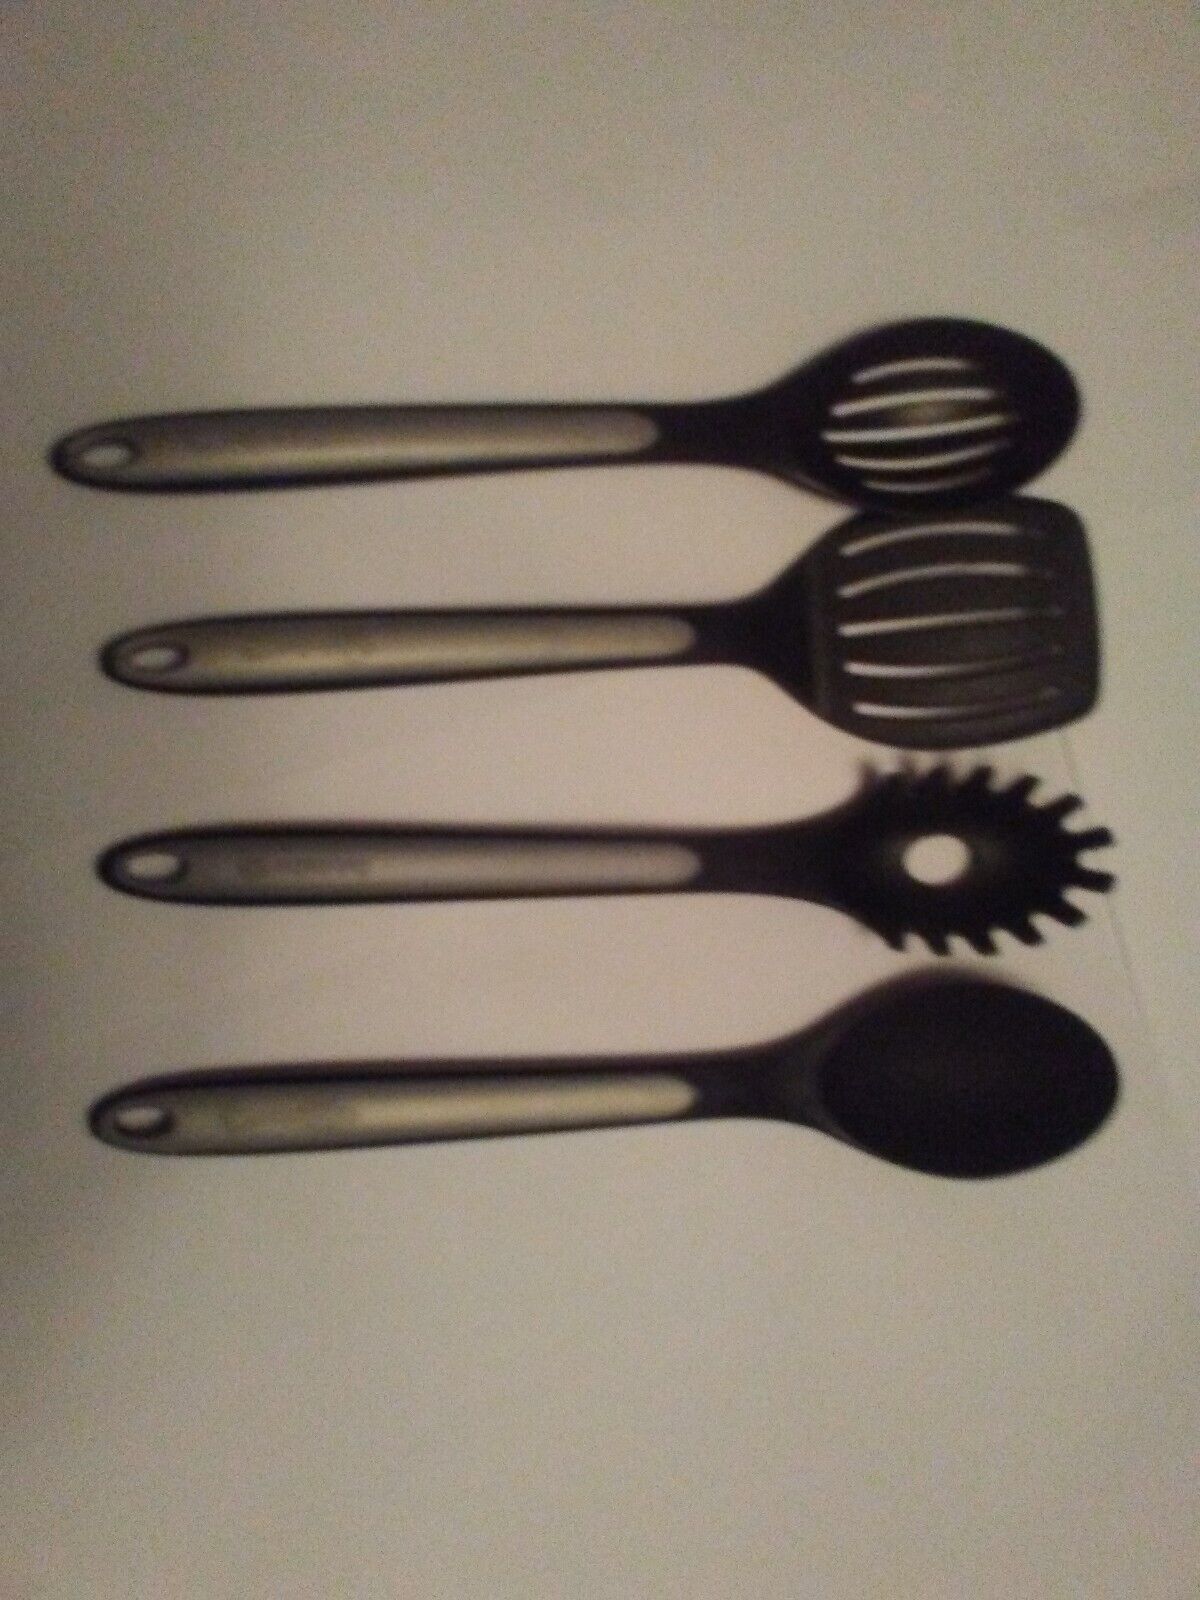 lot of Calphalon utensil set - $47.49